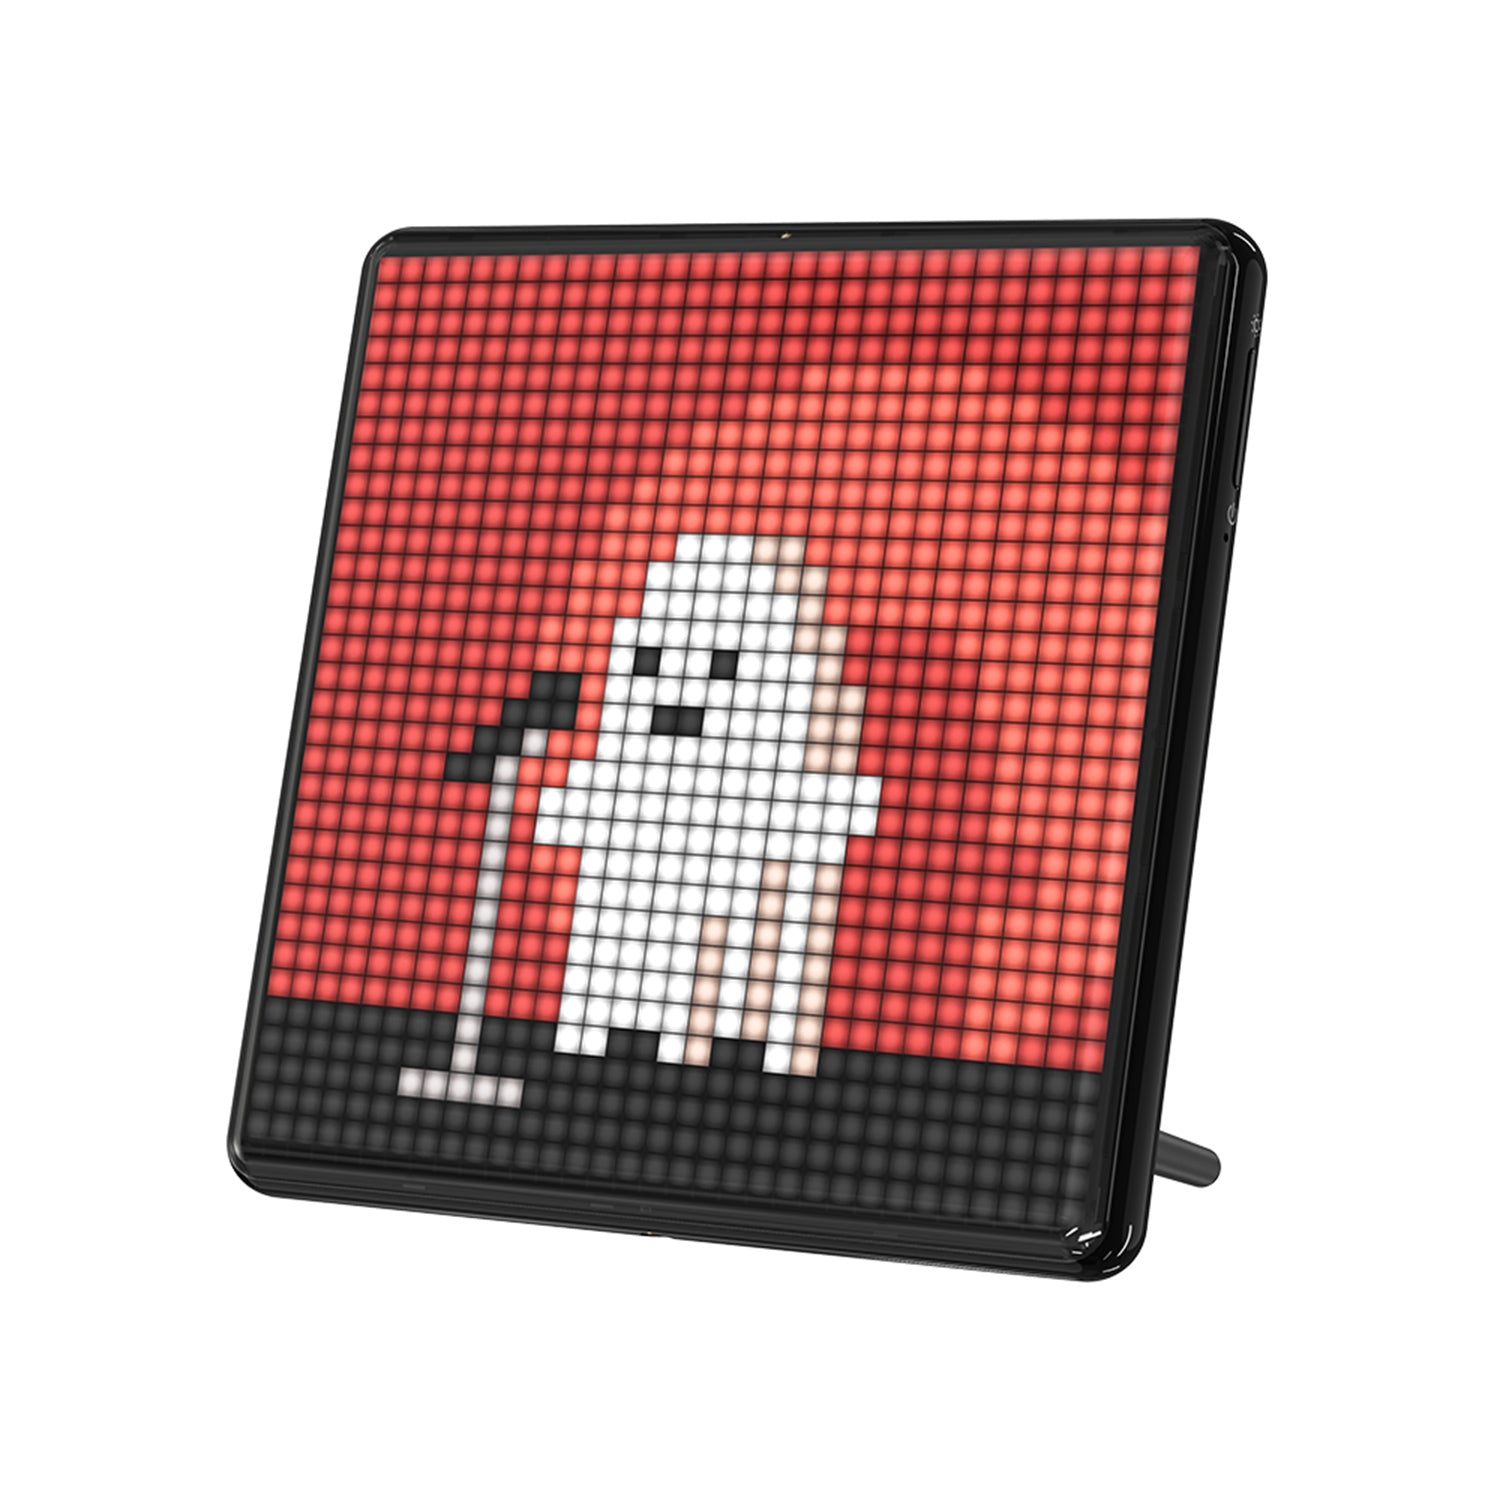 Divoom Pixoo-Max|Pixelanzeige| 32 x 32 programmierbarer LED-Bildschirm